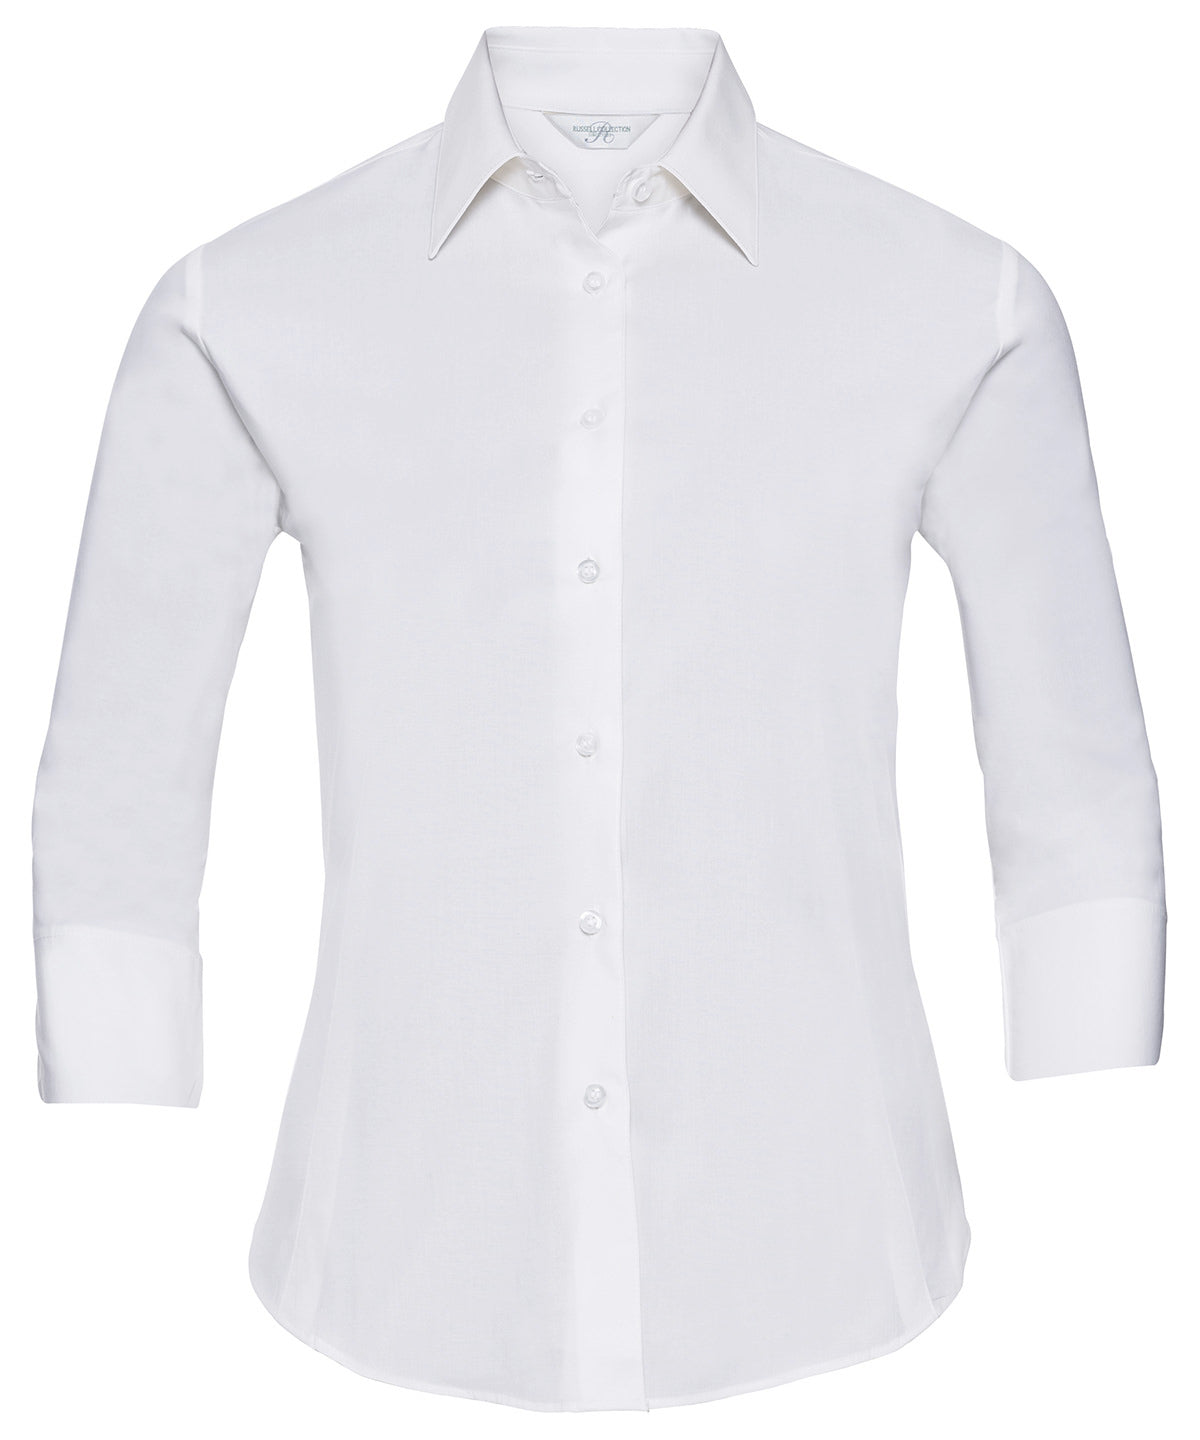 Bolir - Women's ¾ Sleeve Easycare Fitted Shirt